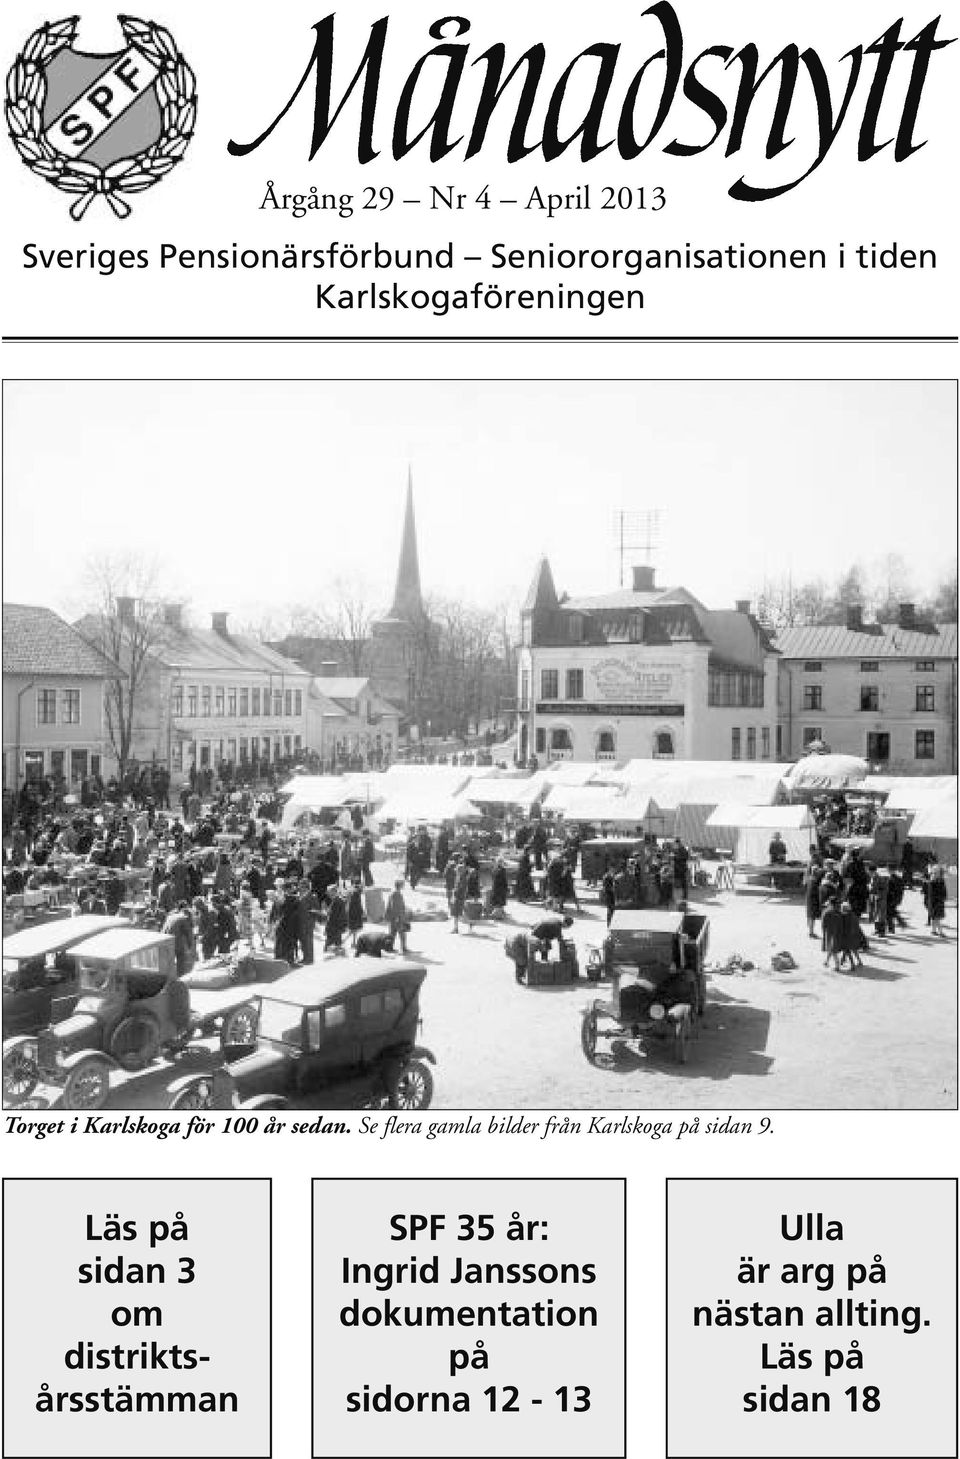 Se flera gamla bilder från Karlskoga på sidan 9.